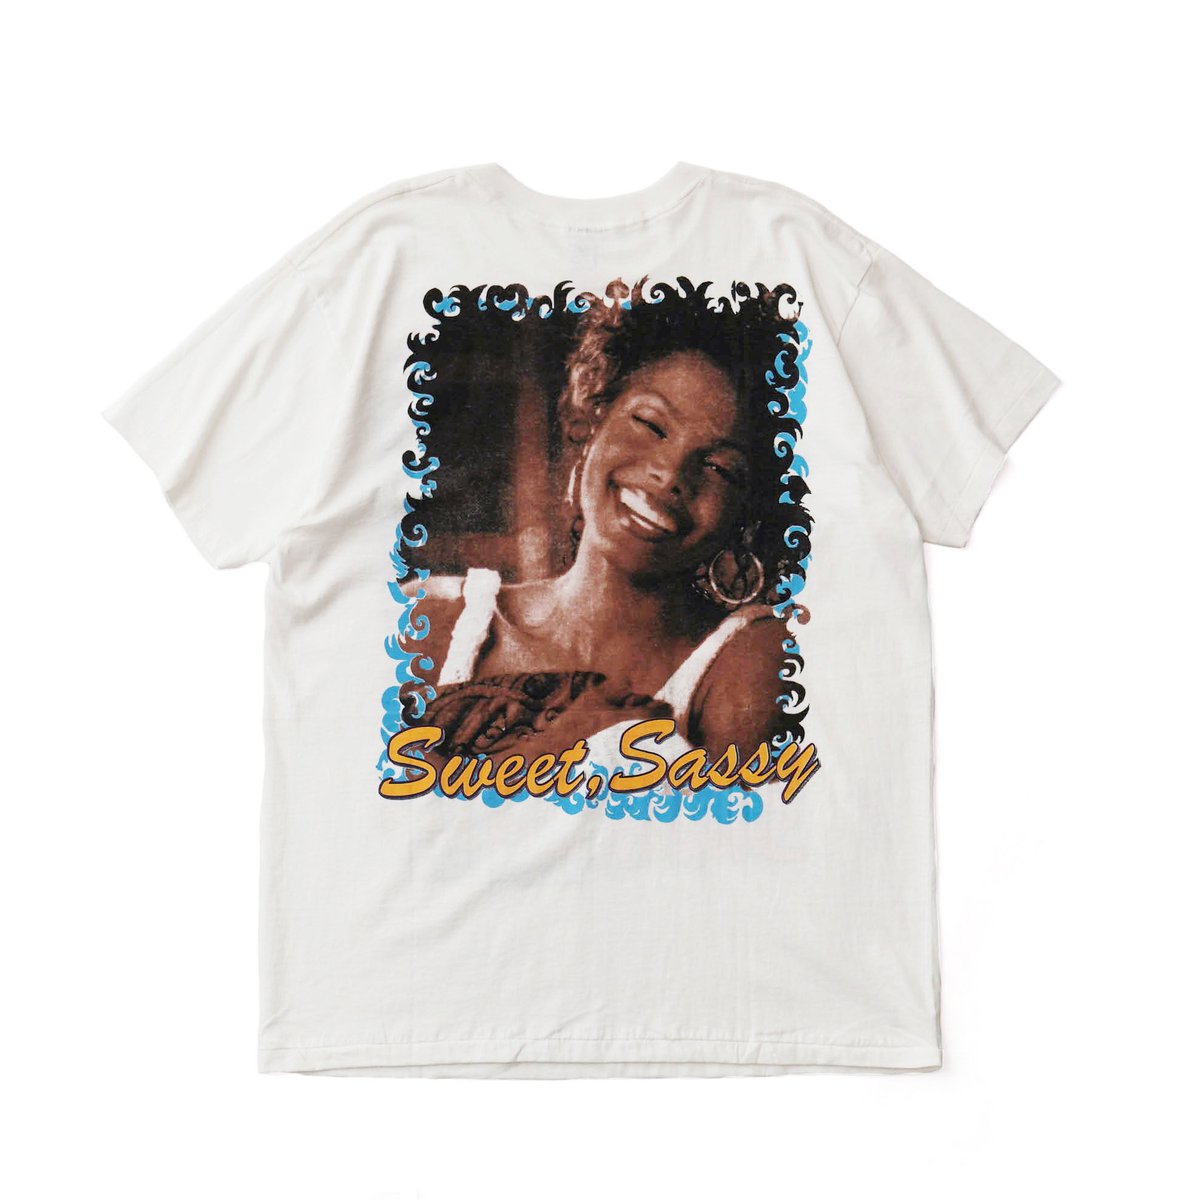 90s Janet Jackson vintage T rap T